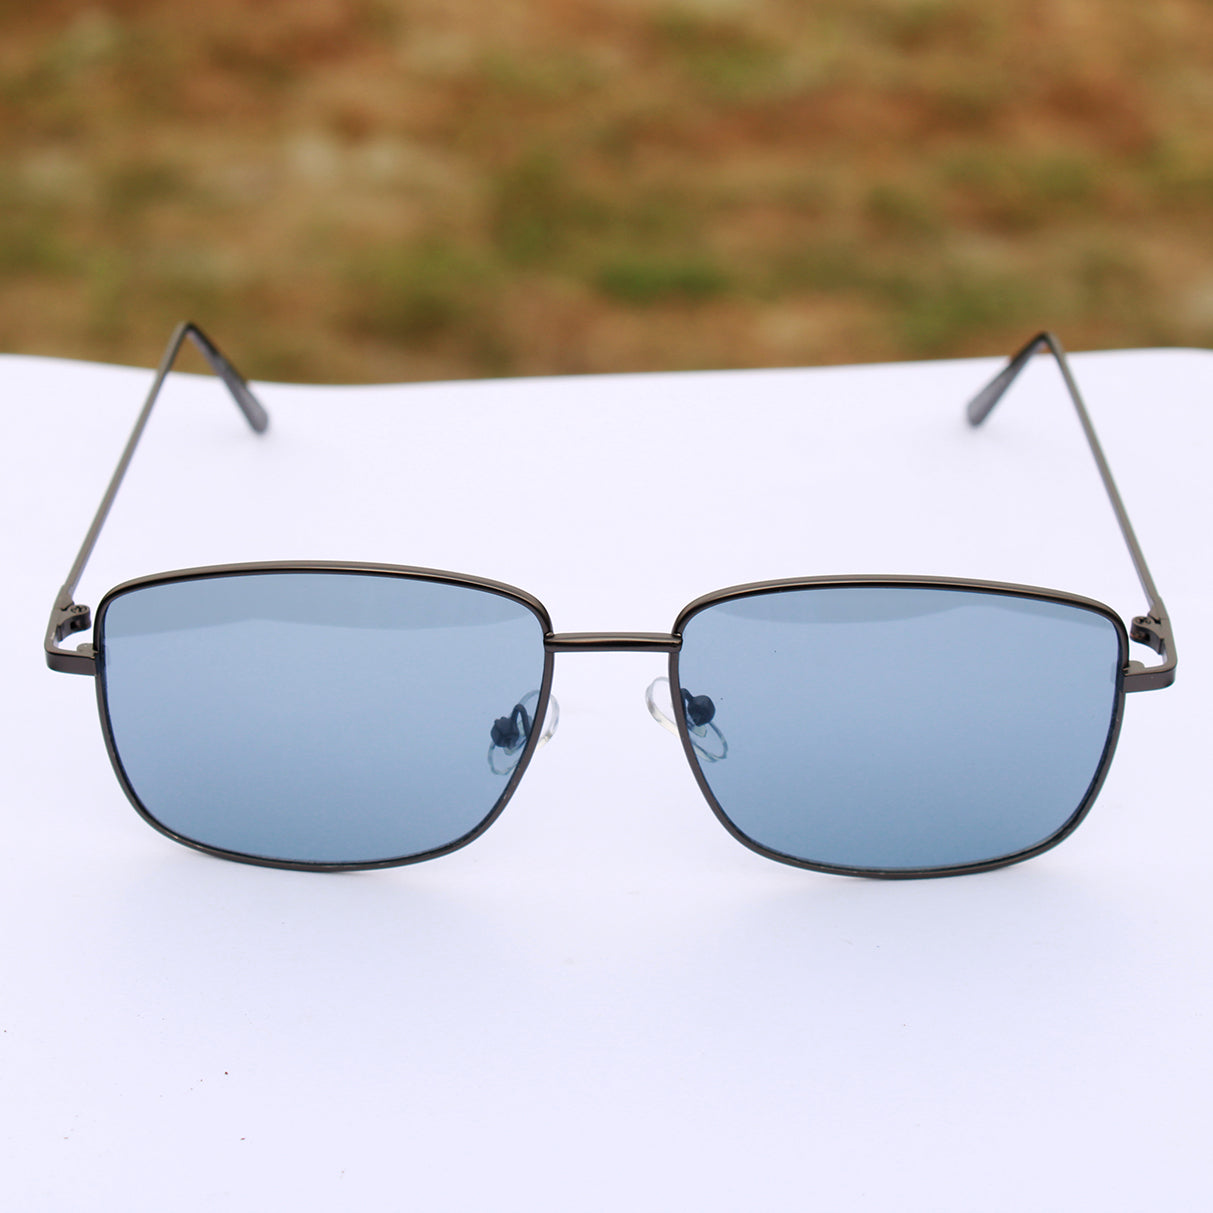  rectangular sunglasses men